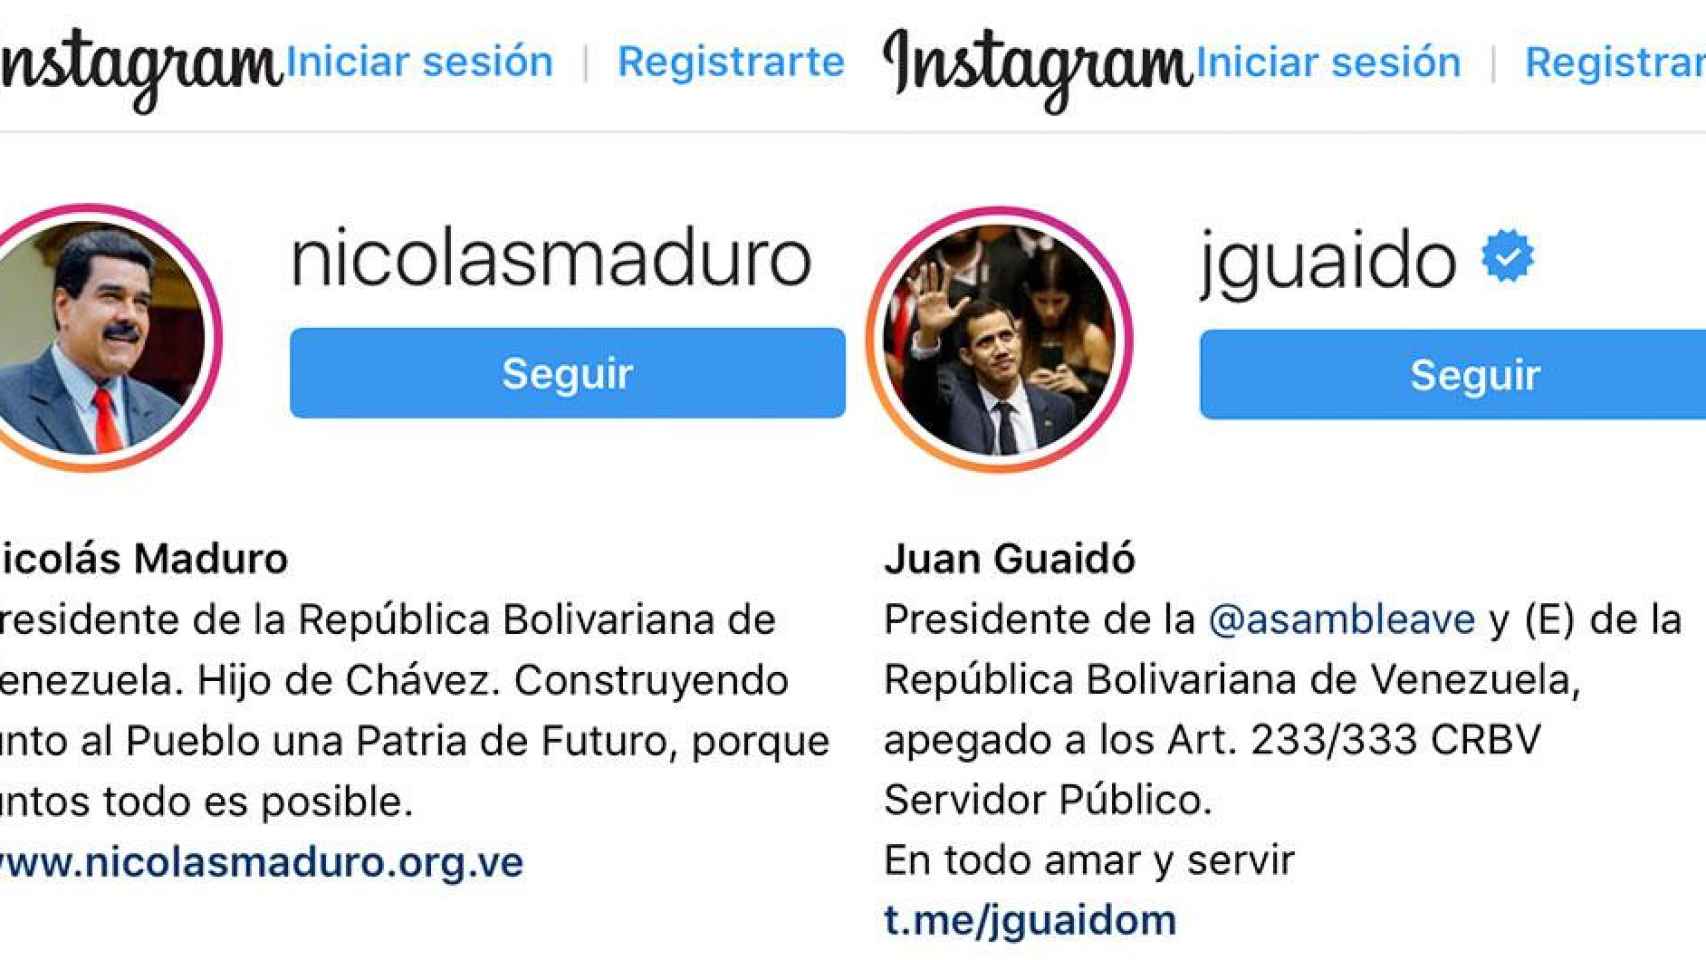 Perfiles de Nicolás Maduro y Juan Guaidó en Instagram